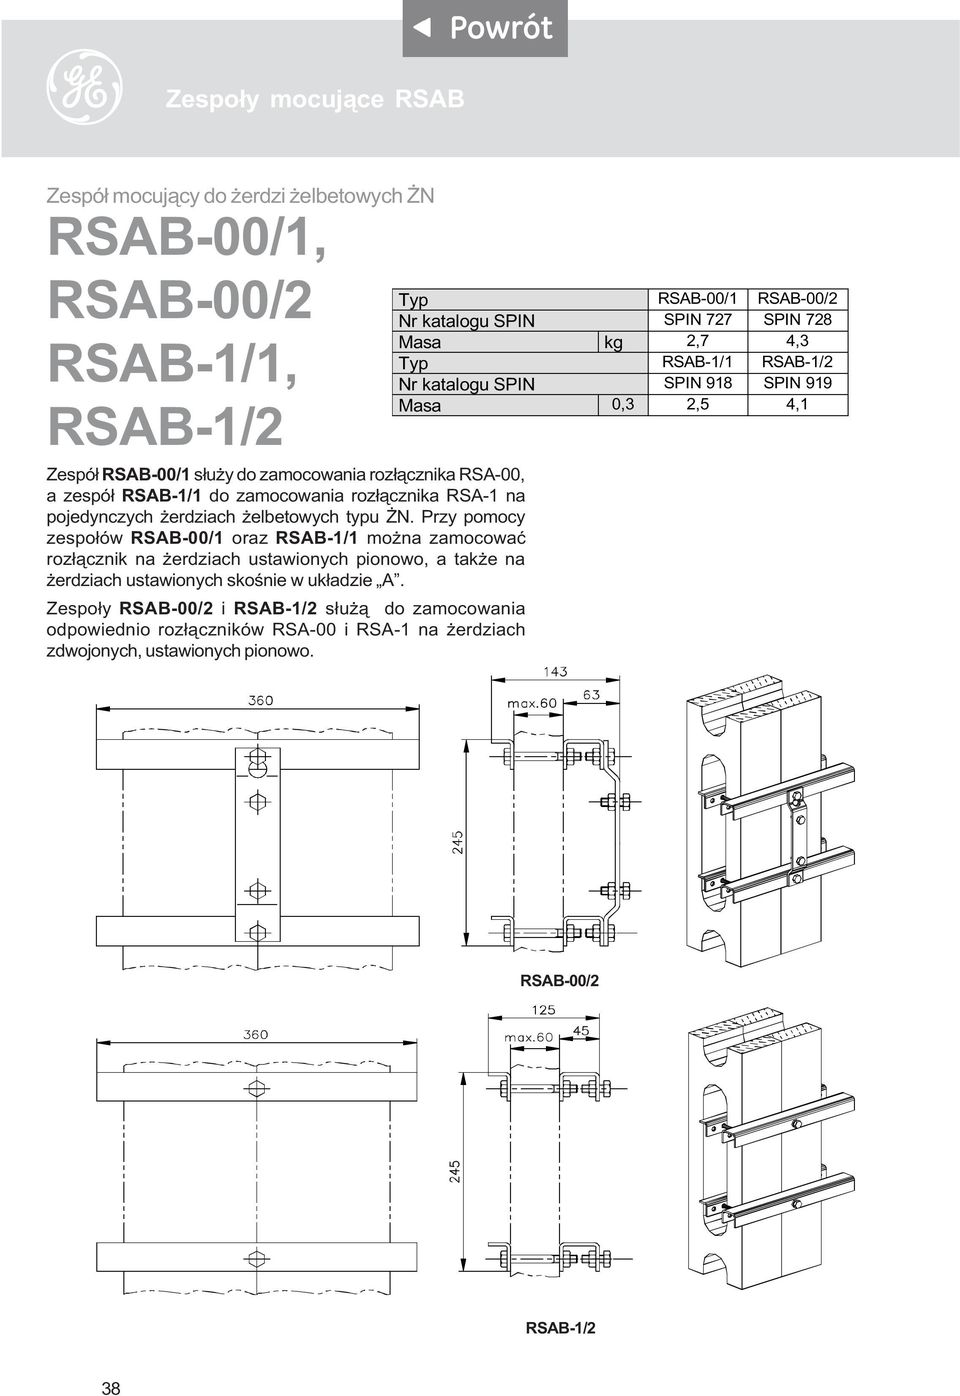 Przy pomocy zespo³ów RSAB-00/1 oraz RSAB-1/1 mo na zamocowaæ roz³¹cznik na erdziach ustawionych pionowo, a tak e na erdziach ustawionych skoœnie w uk³adzie A.